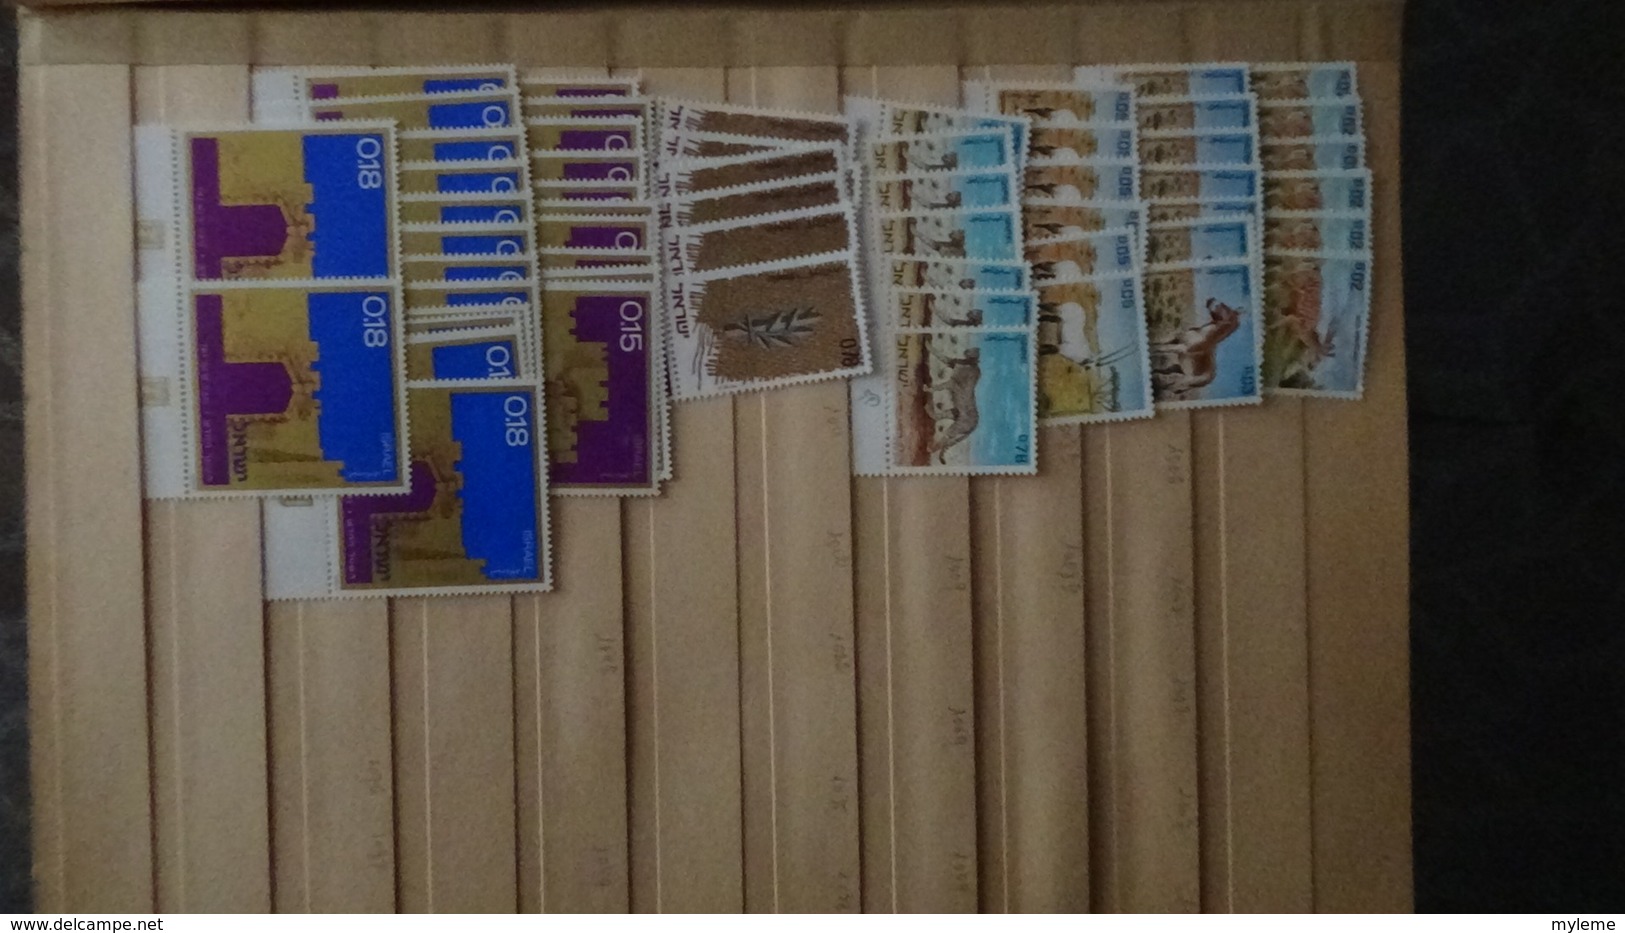 Gros album de stock d'ISRAËL tous les timbres sont avec tabs et ** !!!. A saisir !!!